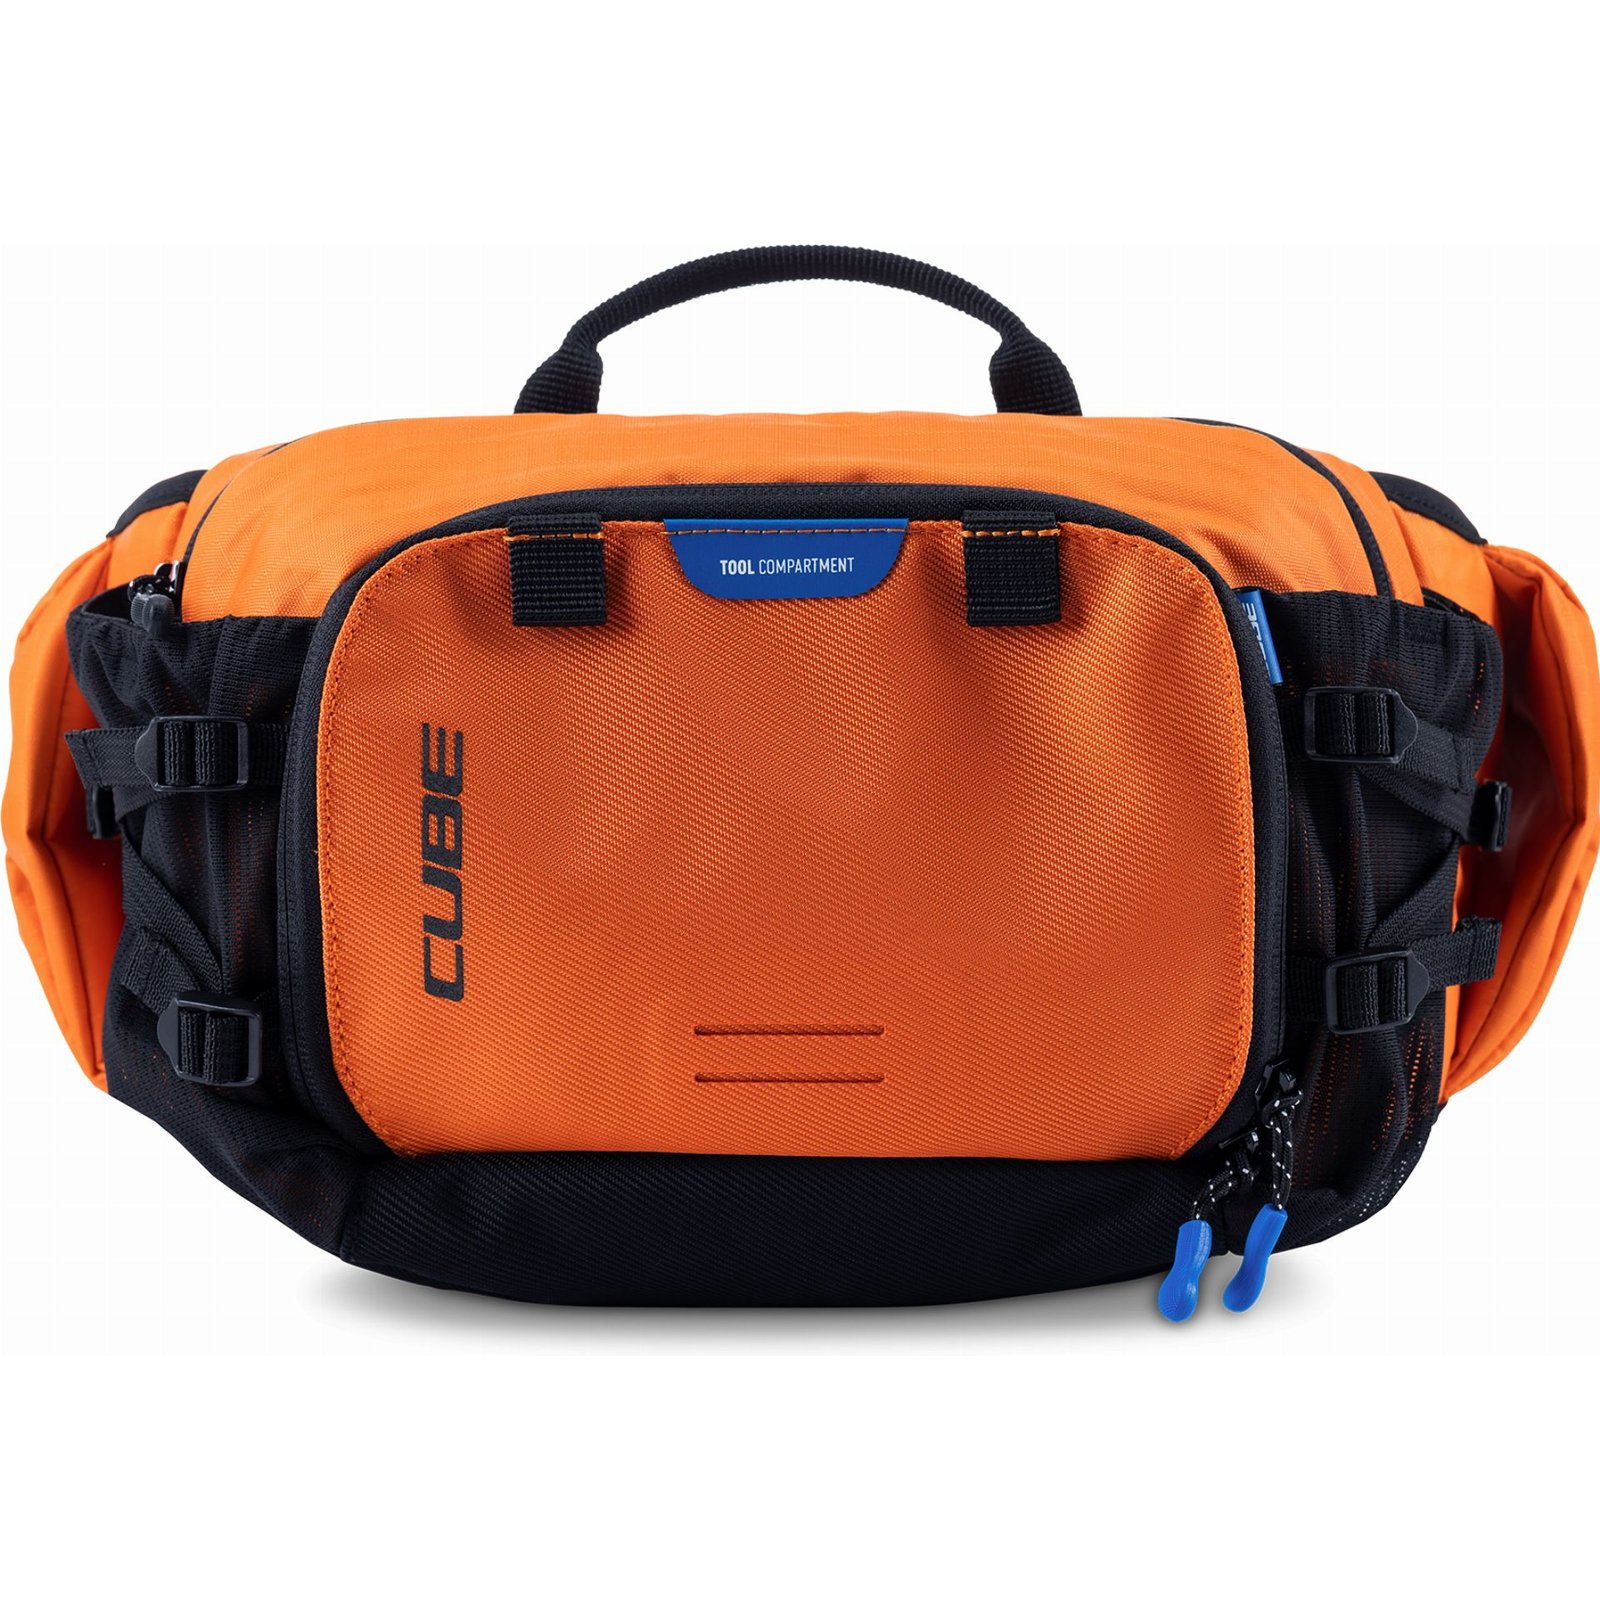 Cube Hfttasche Vertex X Actionteam orange 3 L